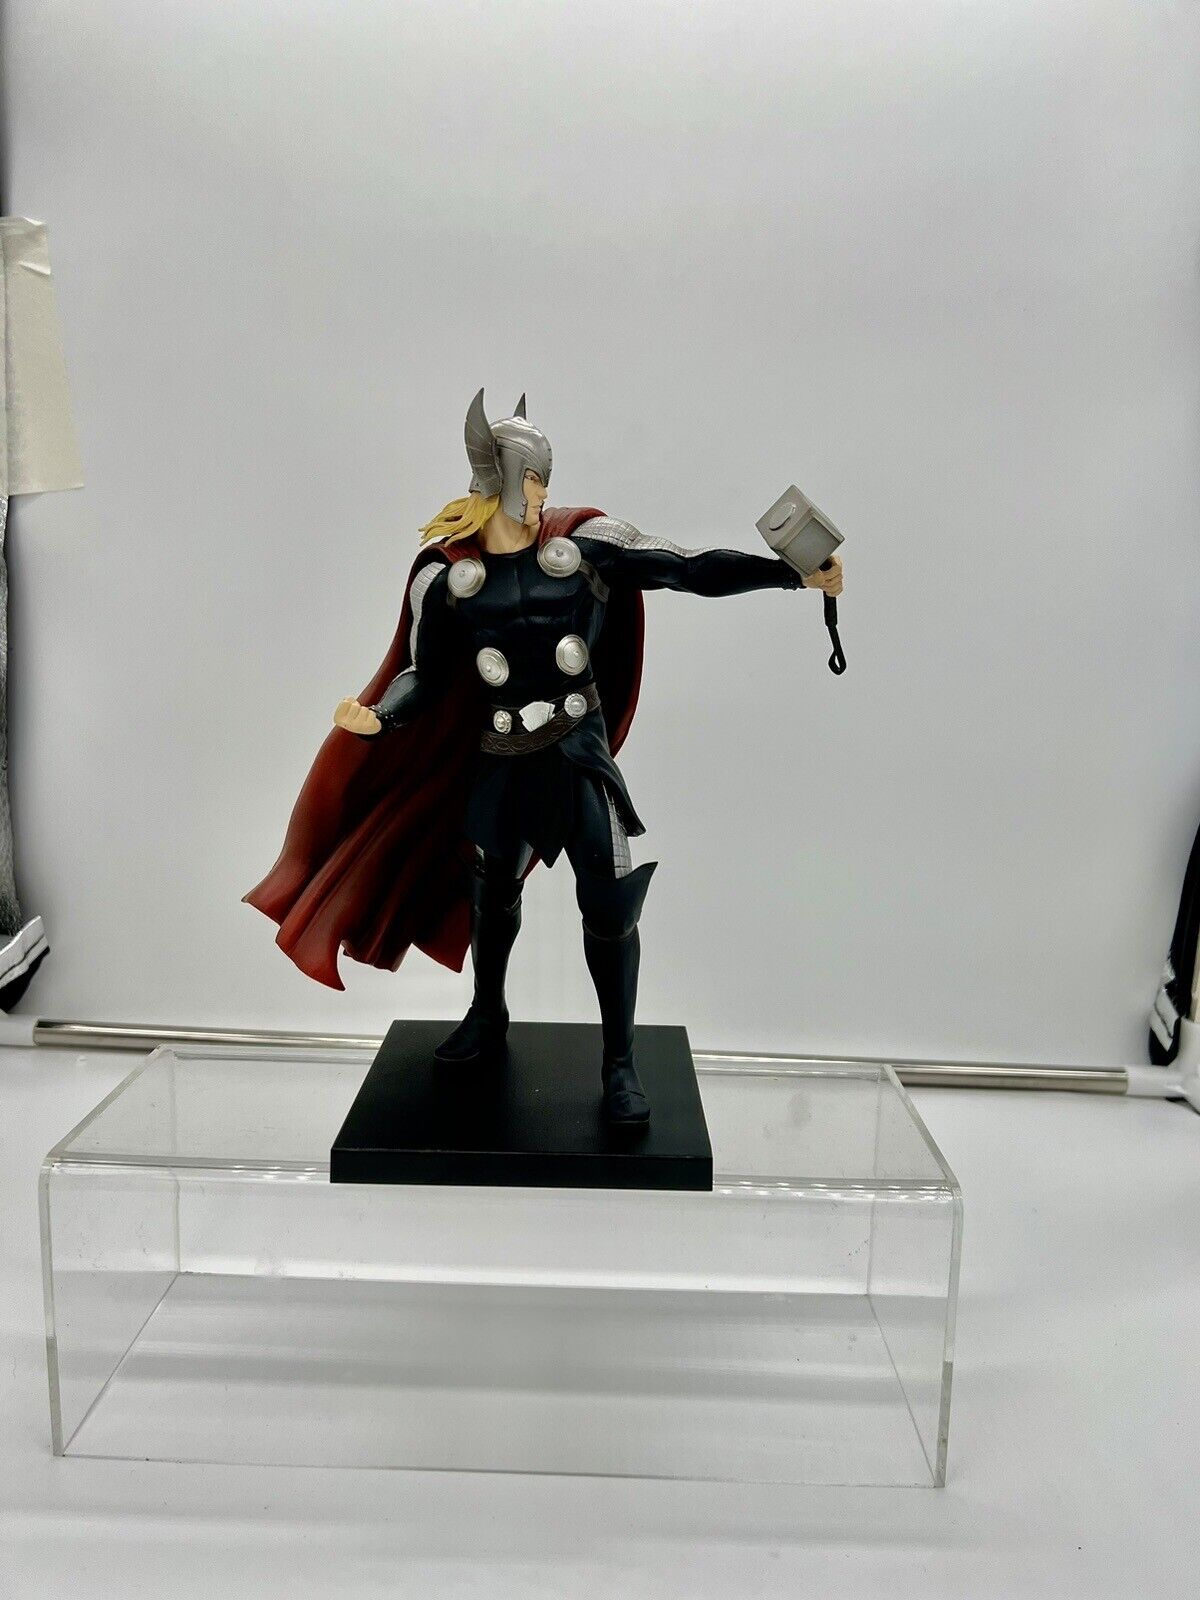 Marvel THOR Artfx statue Kotobukiya Avengers Action Figure With Hammer & Stand